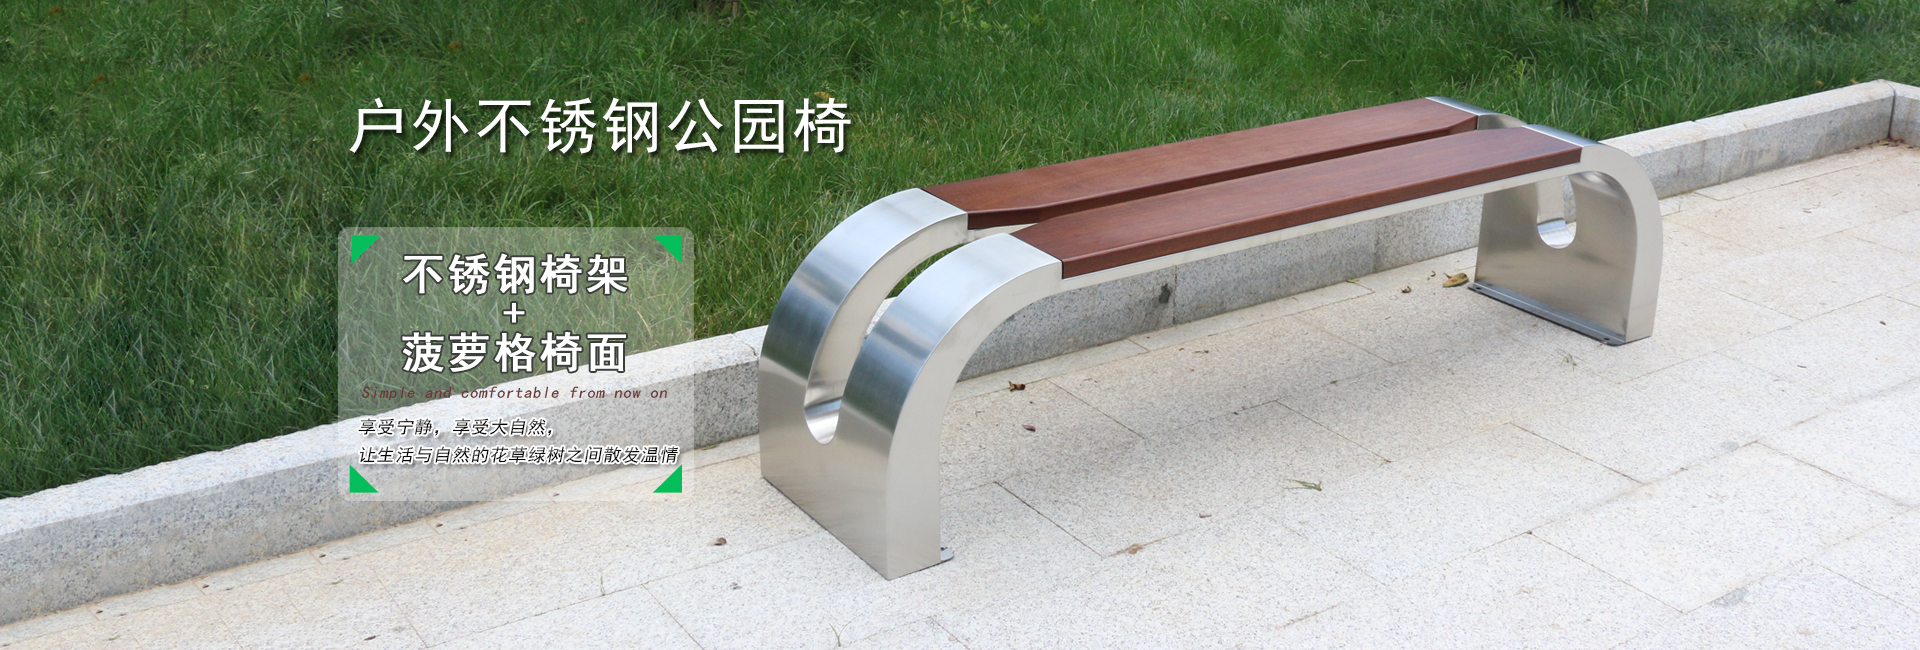 舒纳和专业生产定制:户外公园椅|不锈钢公园椅|异形公园椅|铸铝公园椅,等户外产品.